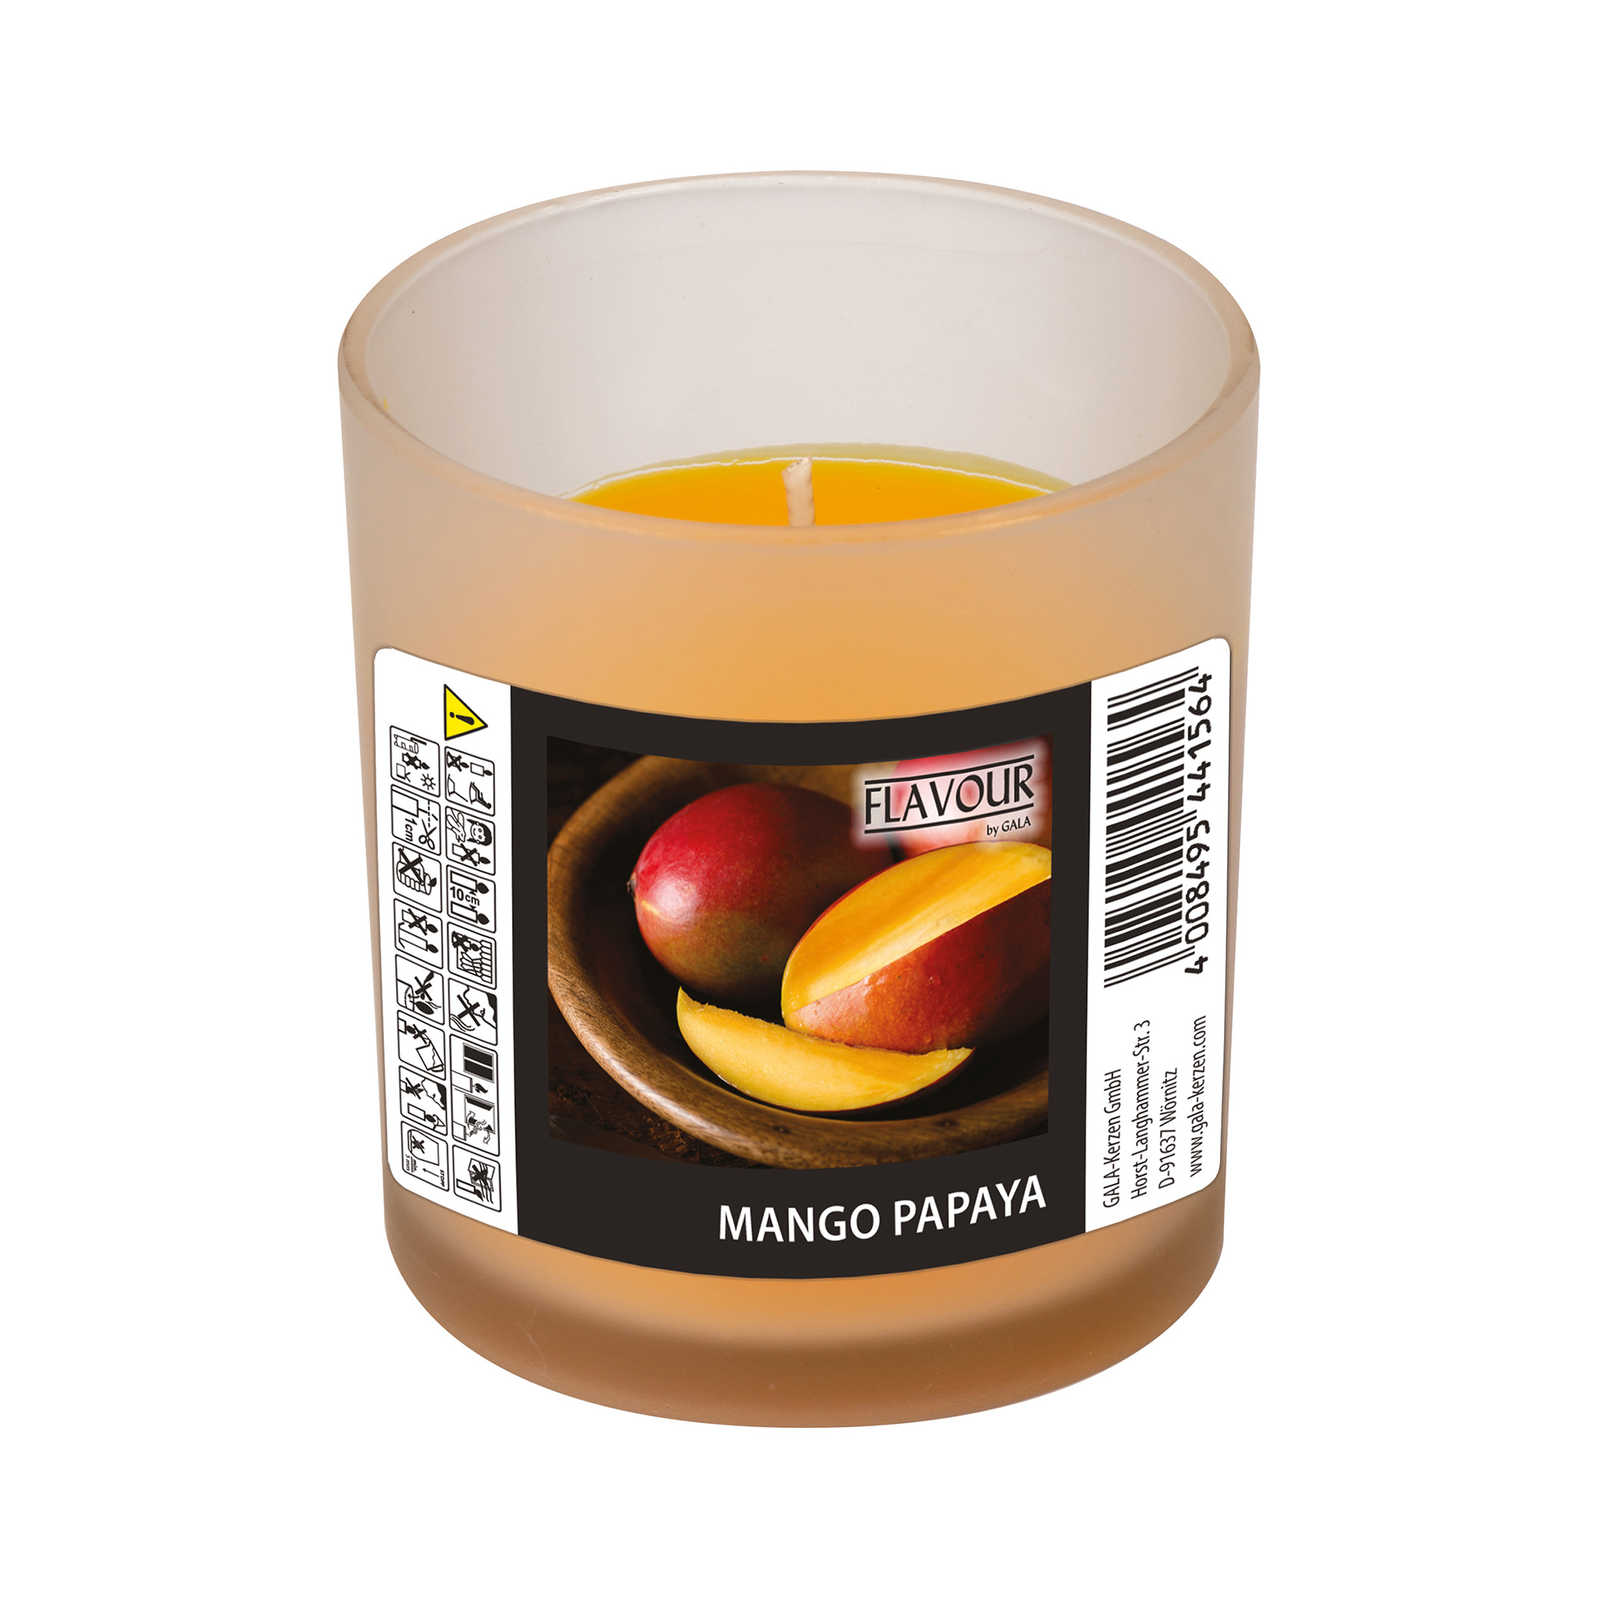         Mango Papaya Duftkerze mit fruchtigen Duft – 110g
    